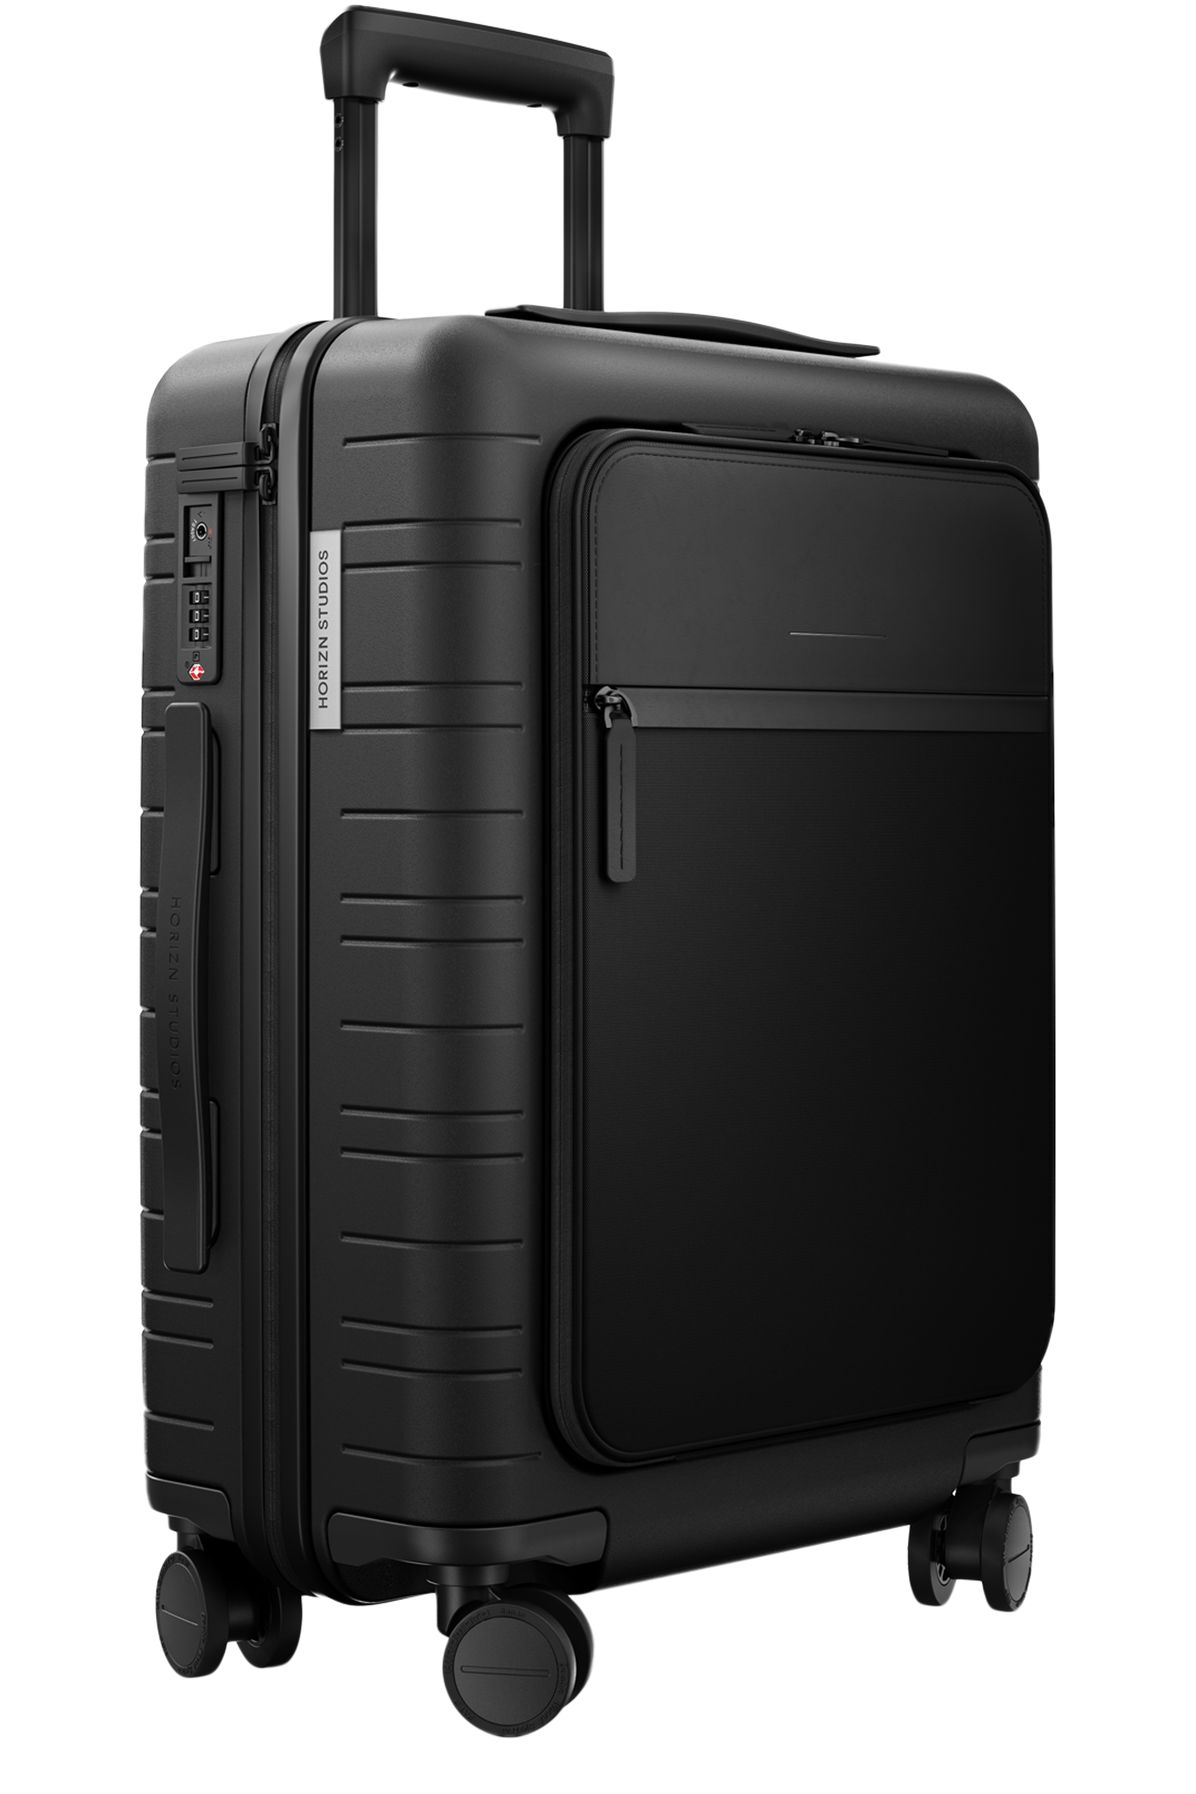 Horizn Studios M5 Cabine Essential luggage (33.5L)